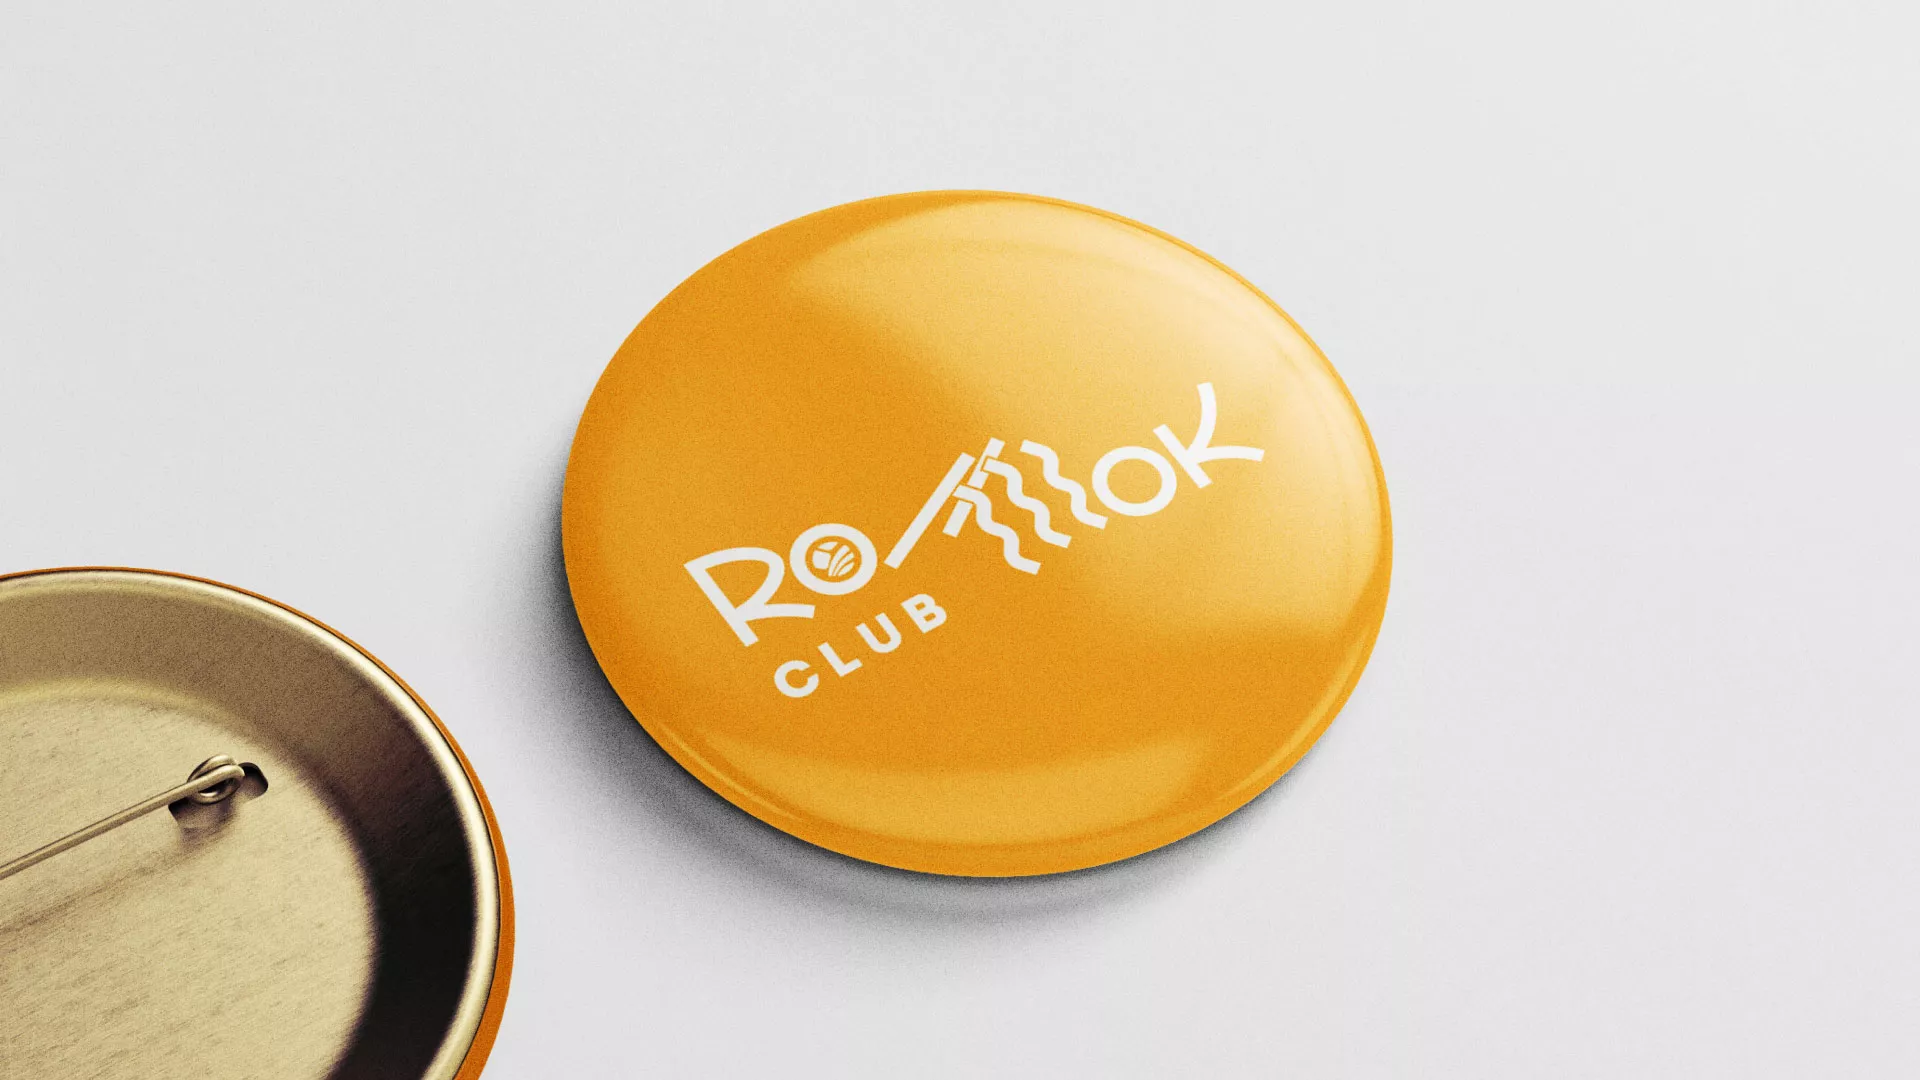 Создание логотипа суши-бара «Roll Wok Club» в Усолье-Сибирском